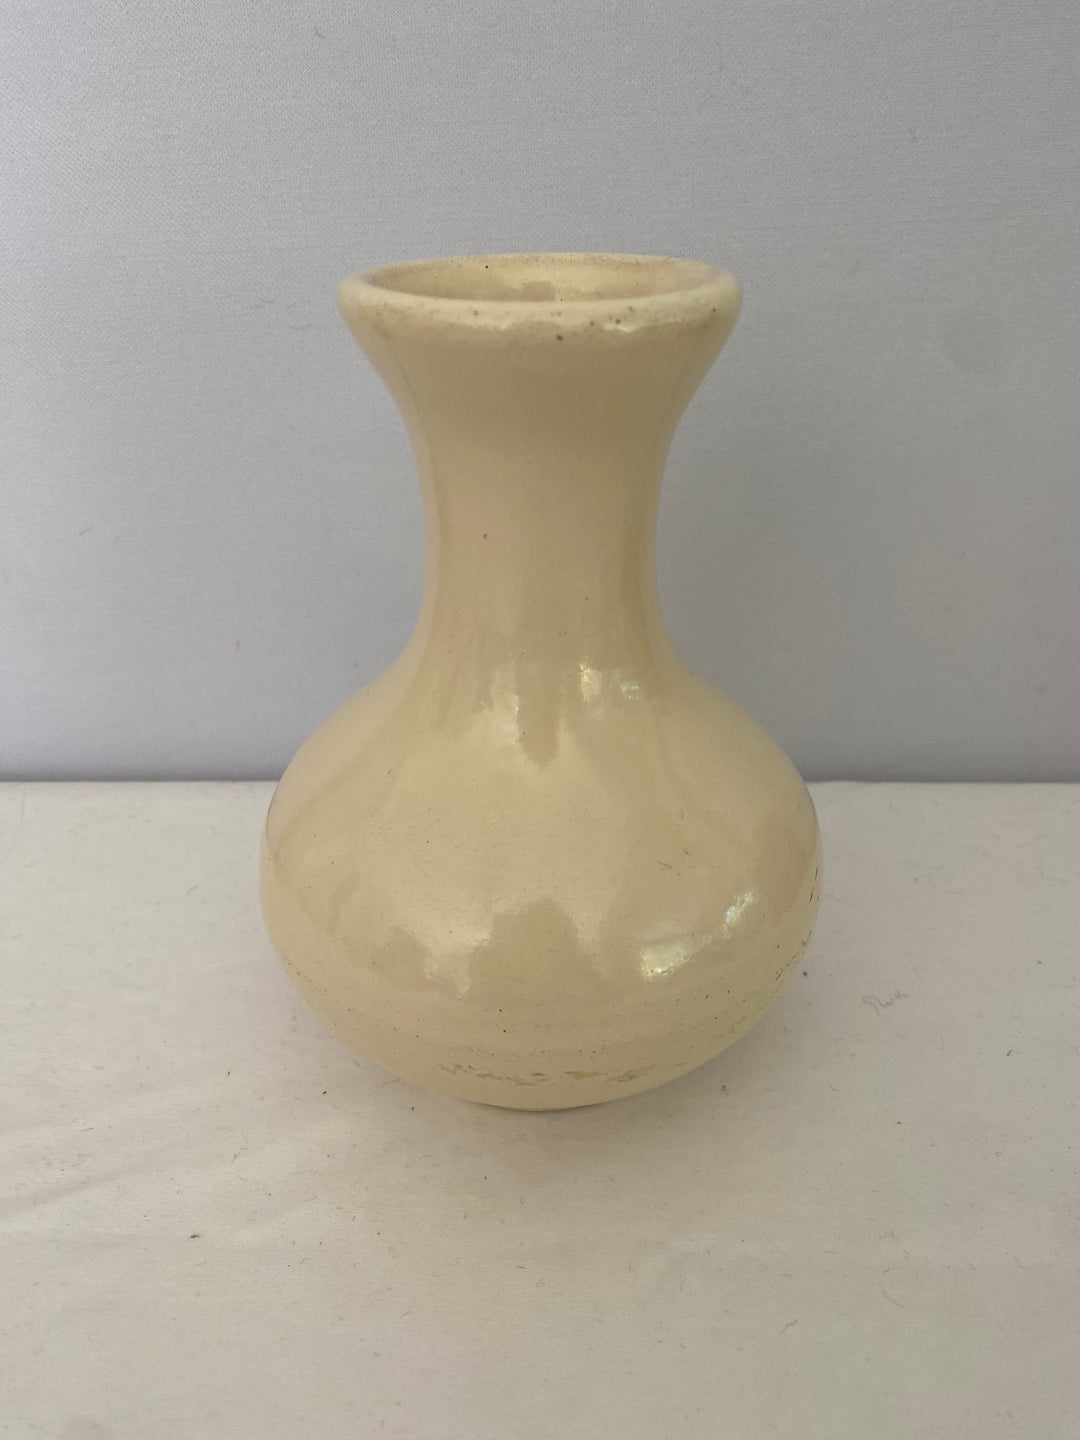 Catalina Island Larger Bud Vase, white glaze